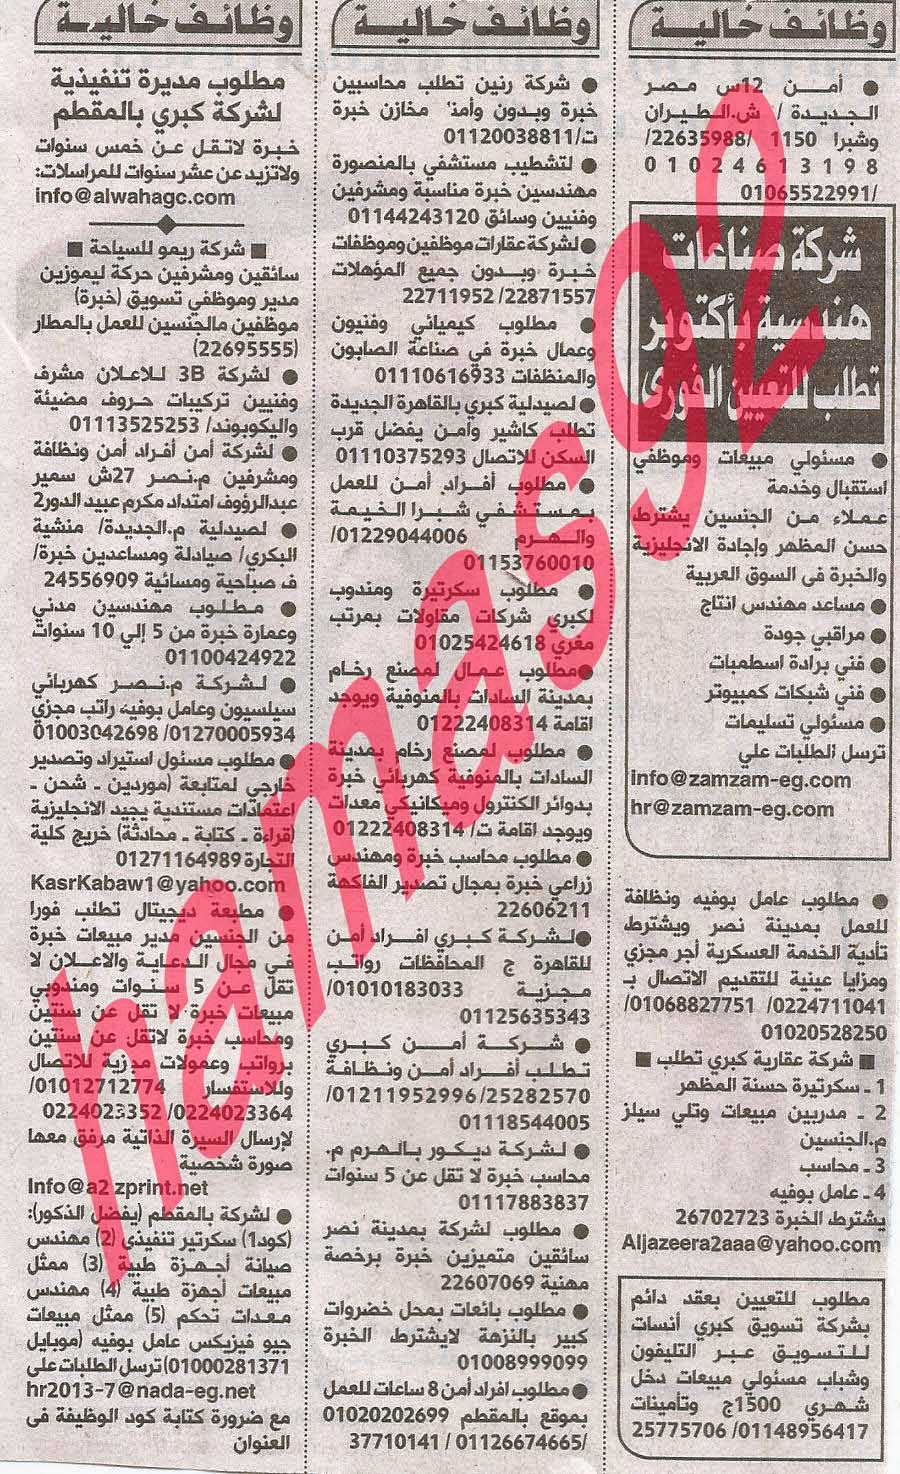 وظائف خالية فى جريدة الاهرام الجمعة 04-10-2013 14